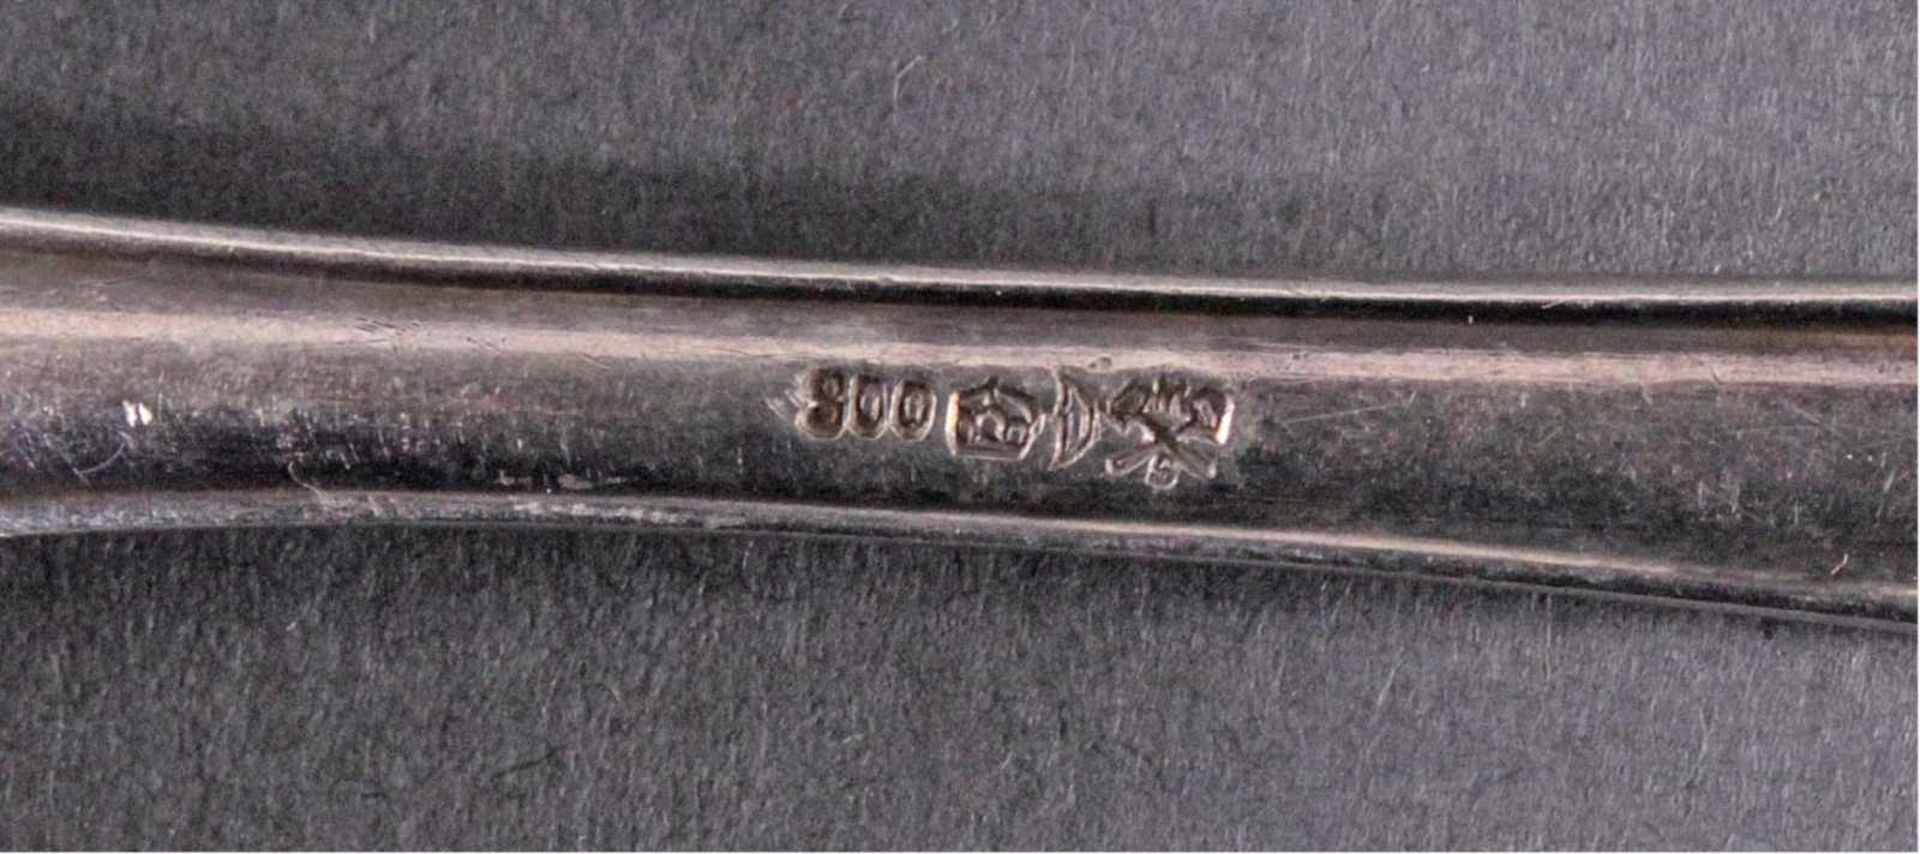 Konvolut silberne BesteckteileBestehend aus:Eine kleine Schöpfkelle punziert A1, H. Pearce & Sons, - Image 4 of 4